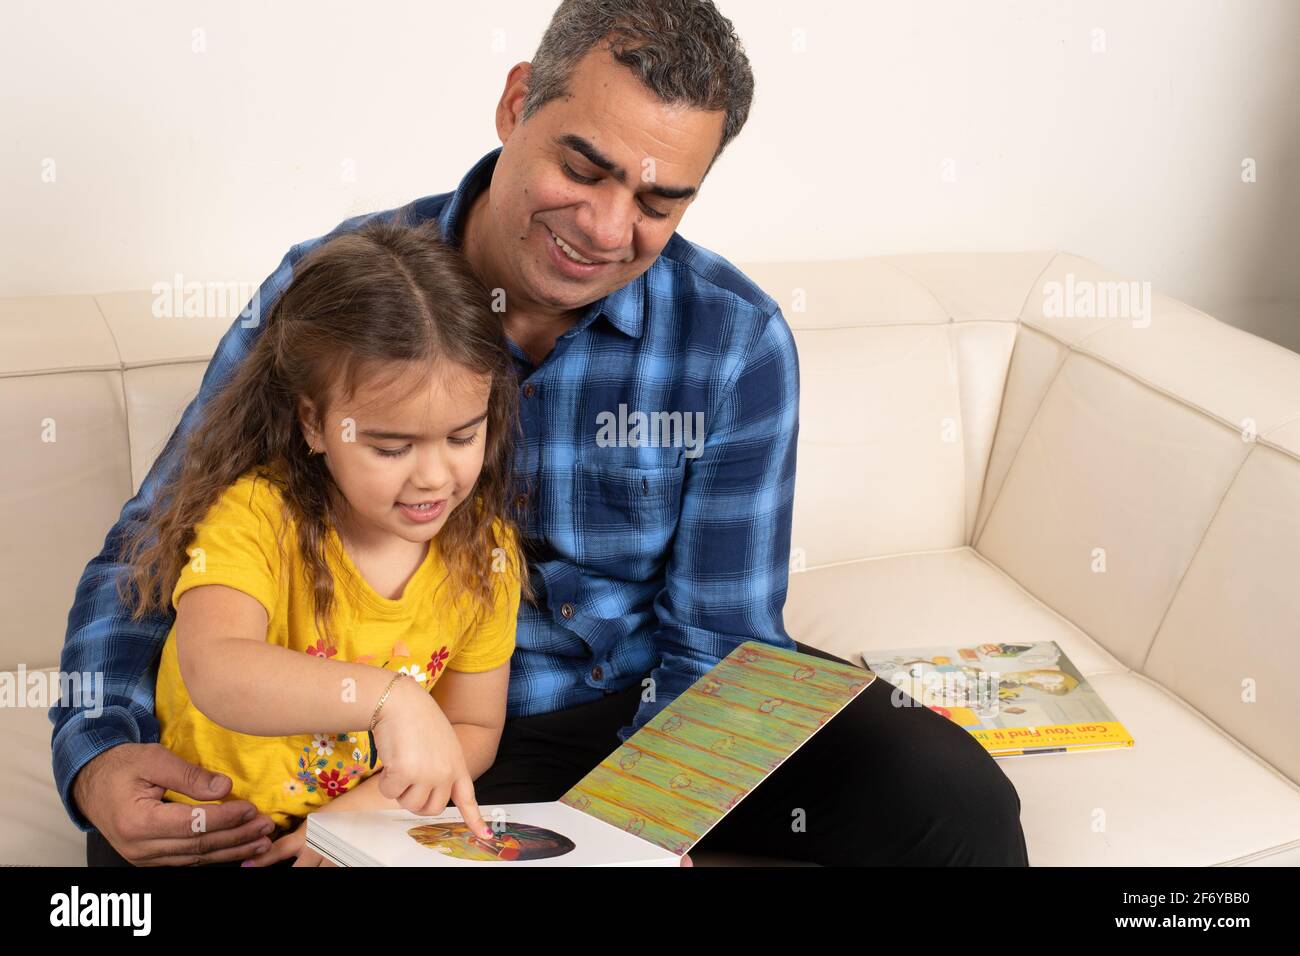 Vierjähriges Mädchen, das mit Großvater ein Bilderbuch ansieht Stockfoto